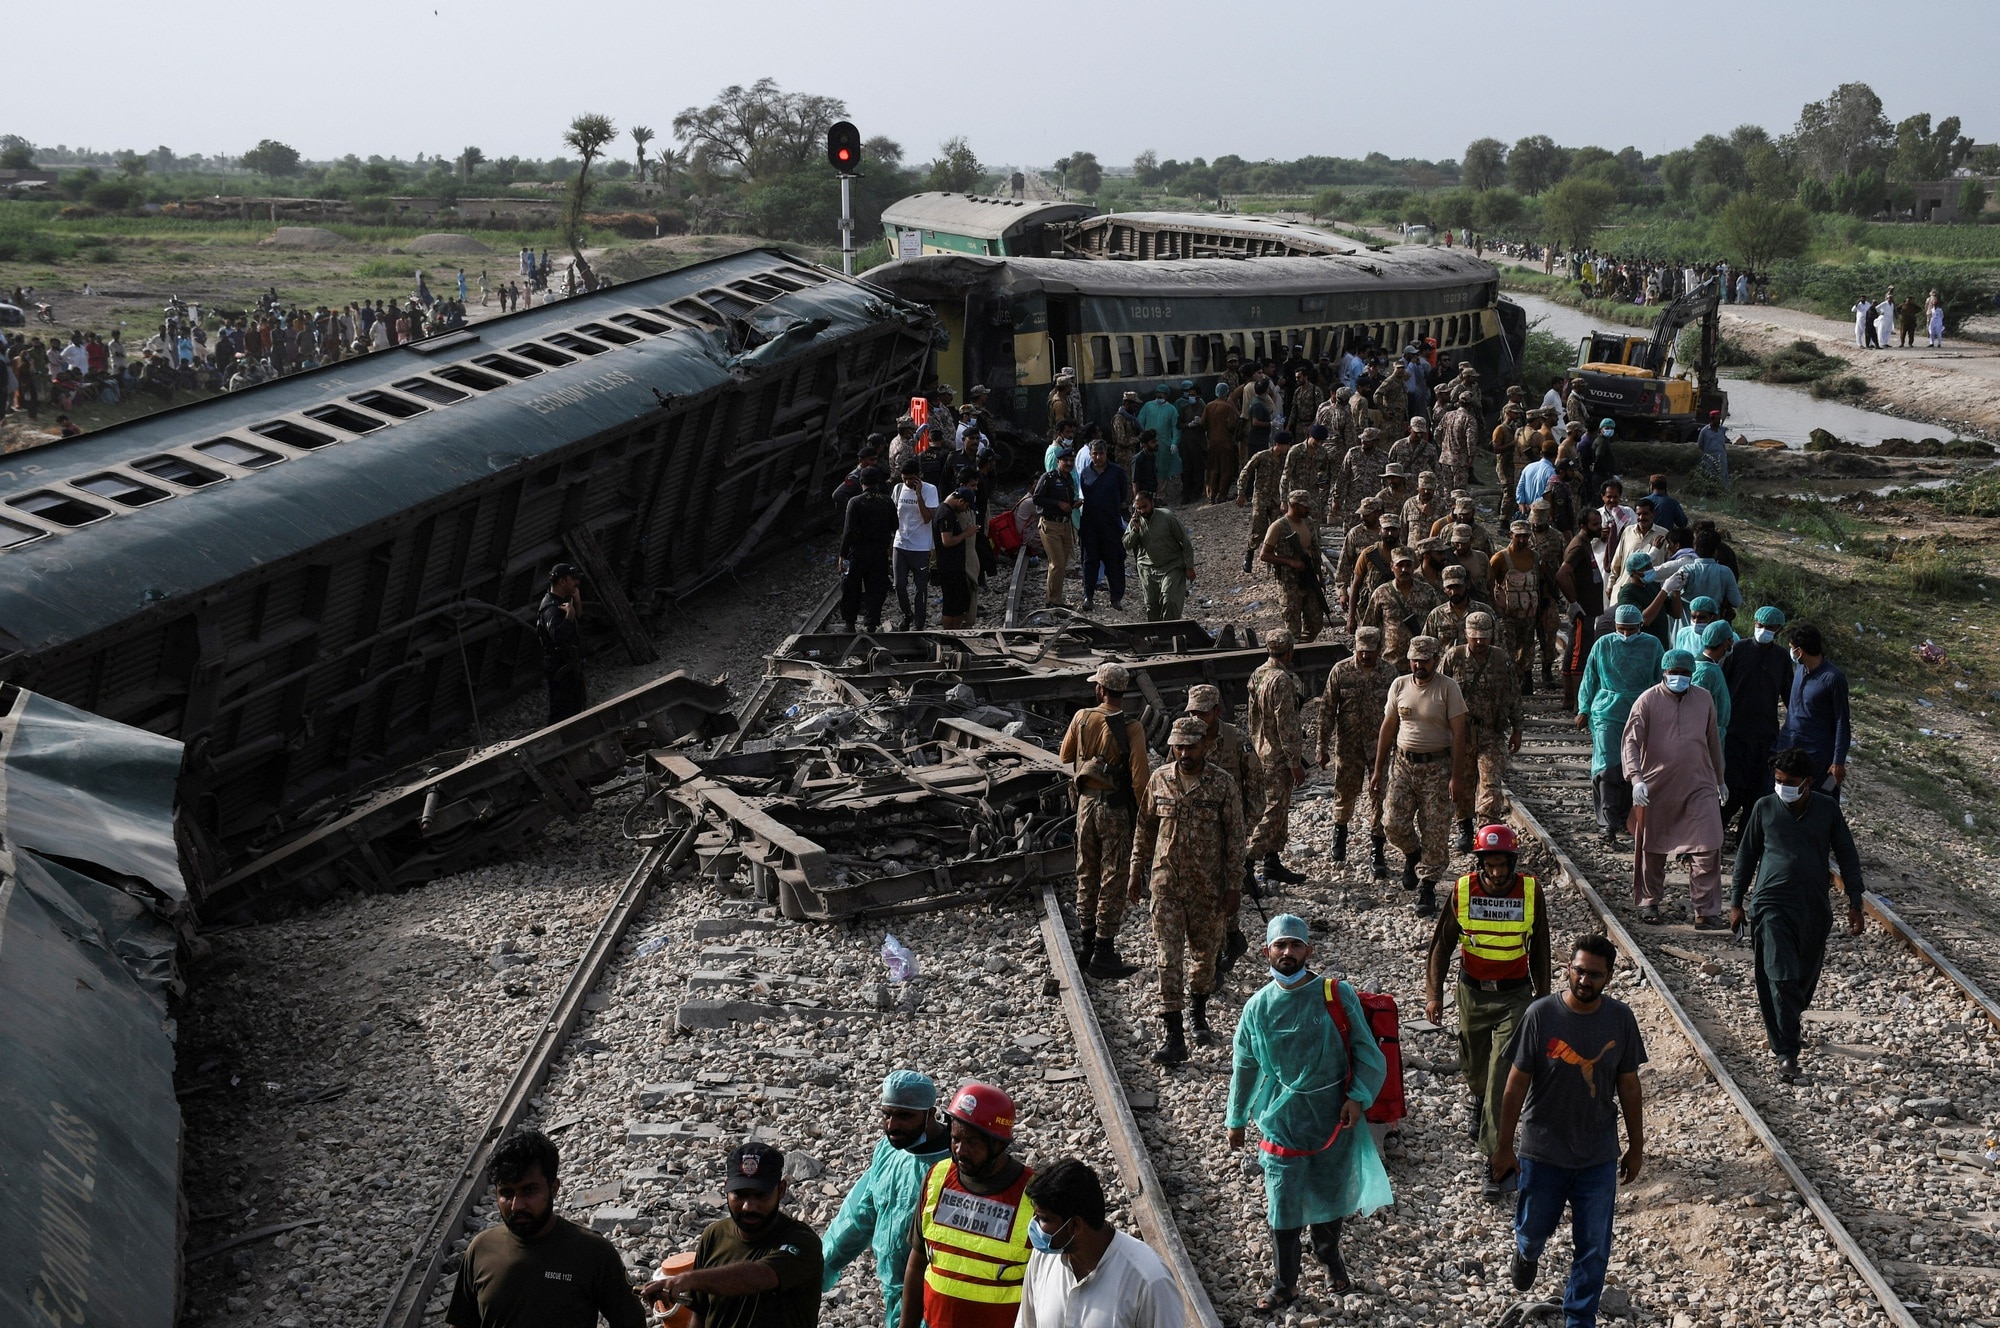 Tàu lửa trật bánh ở Pakistan, ít nhất 28 người chết - Ảnh 1.